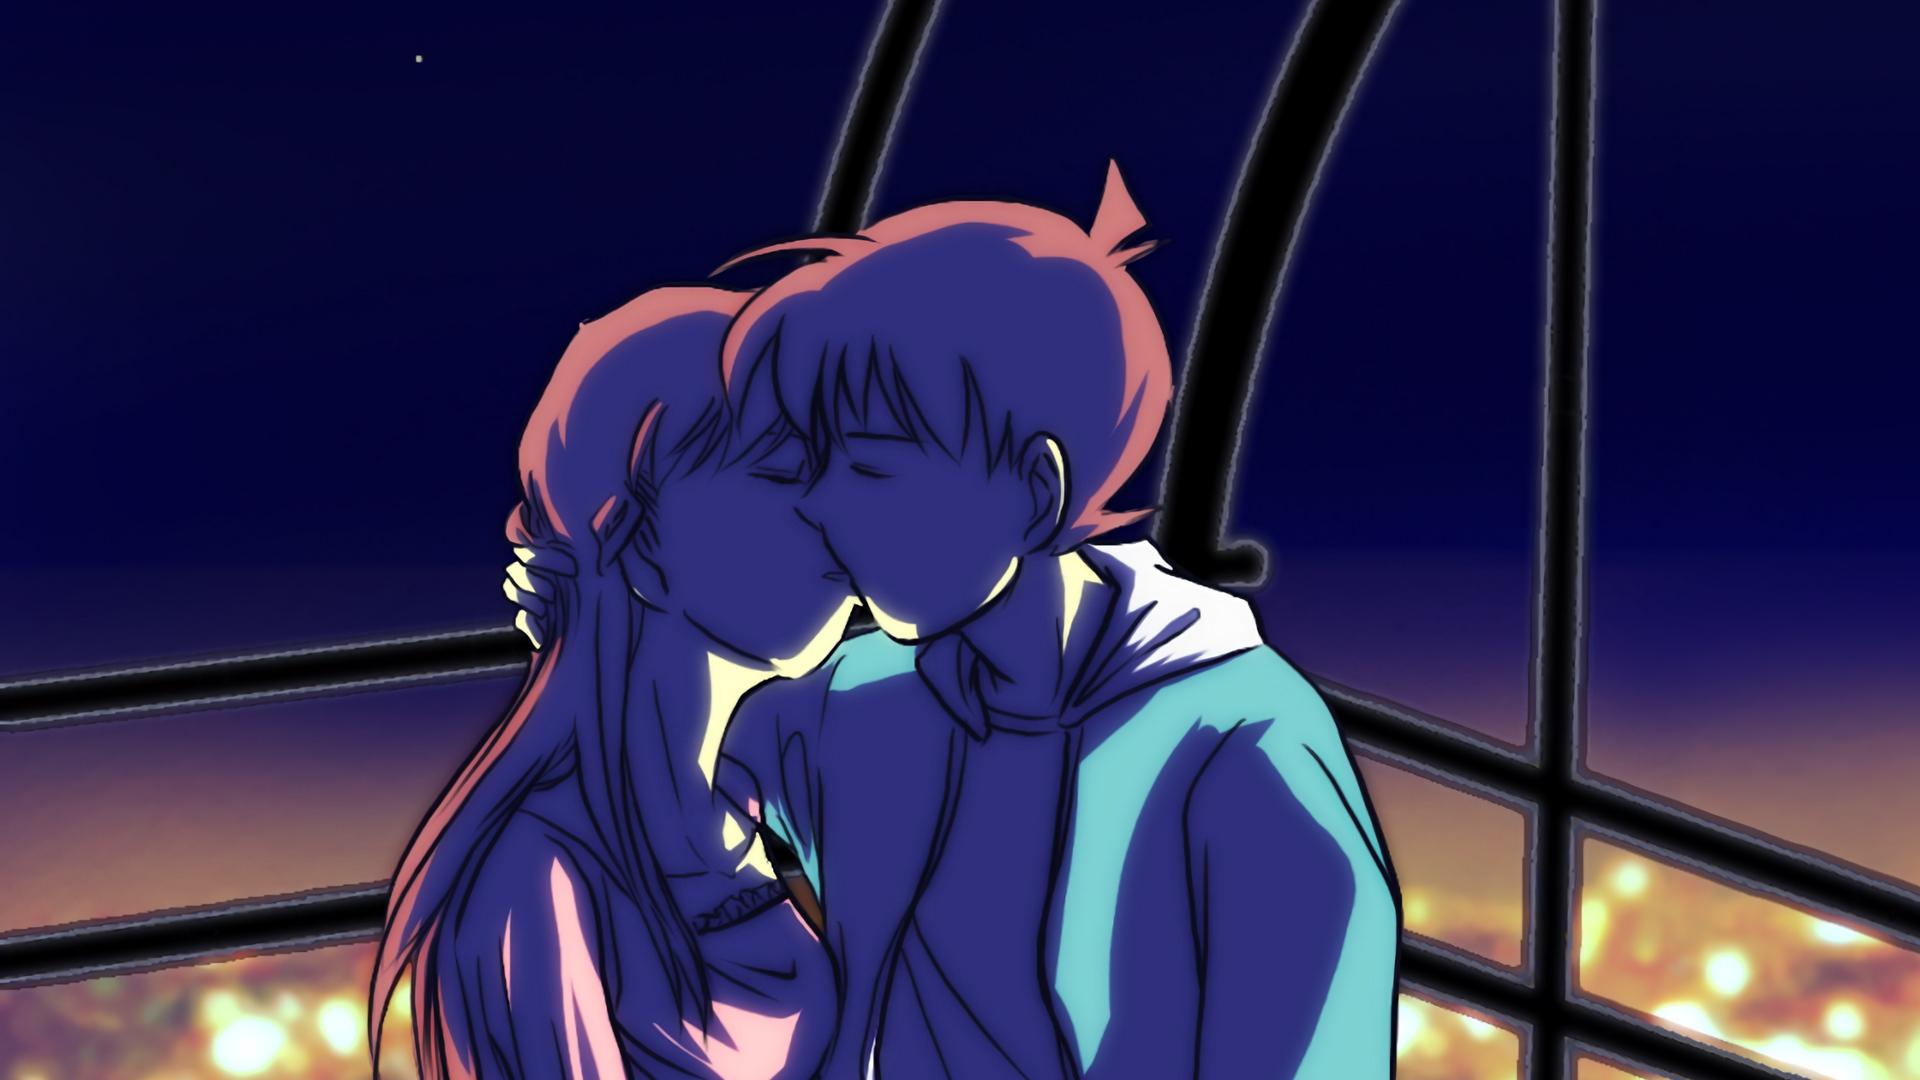 Anime kiss k wallpapers